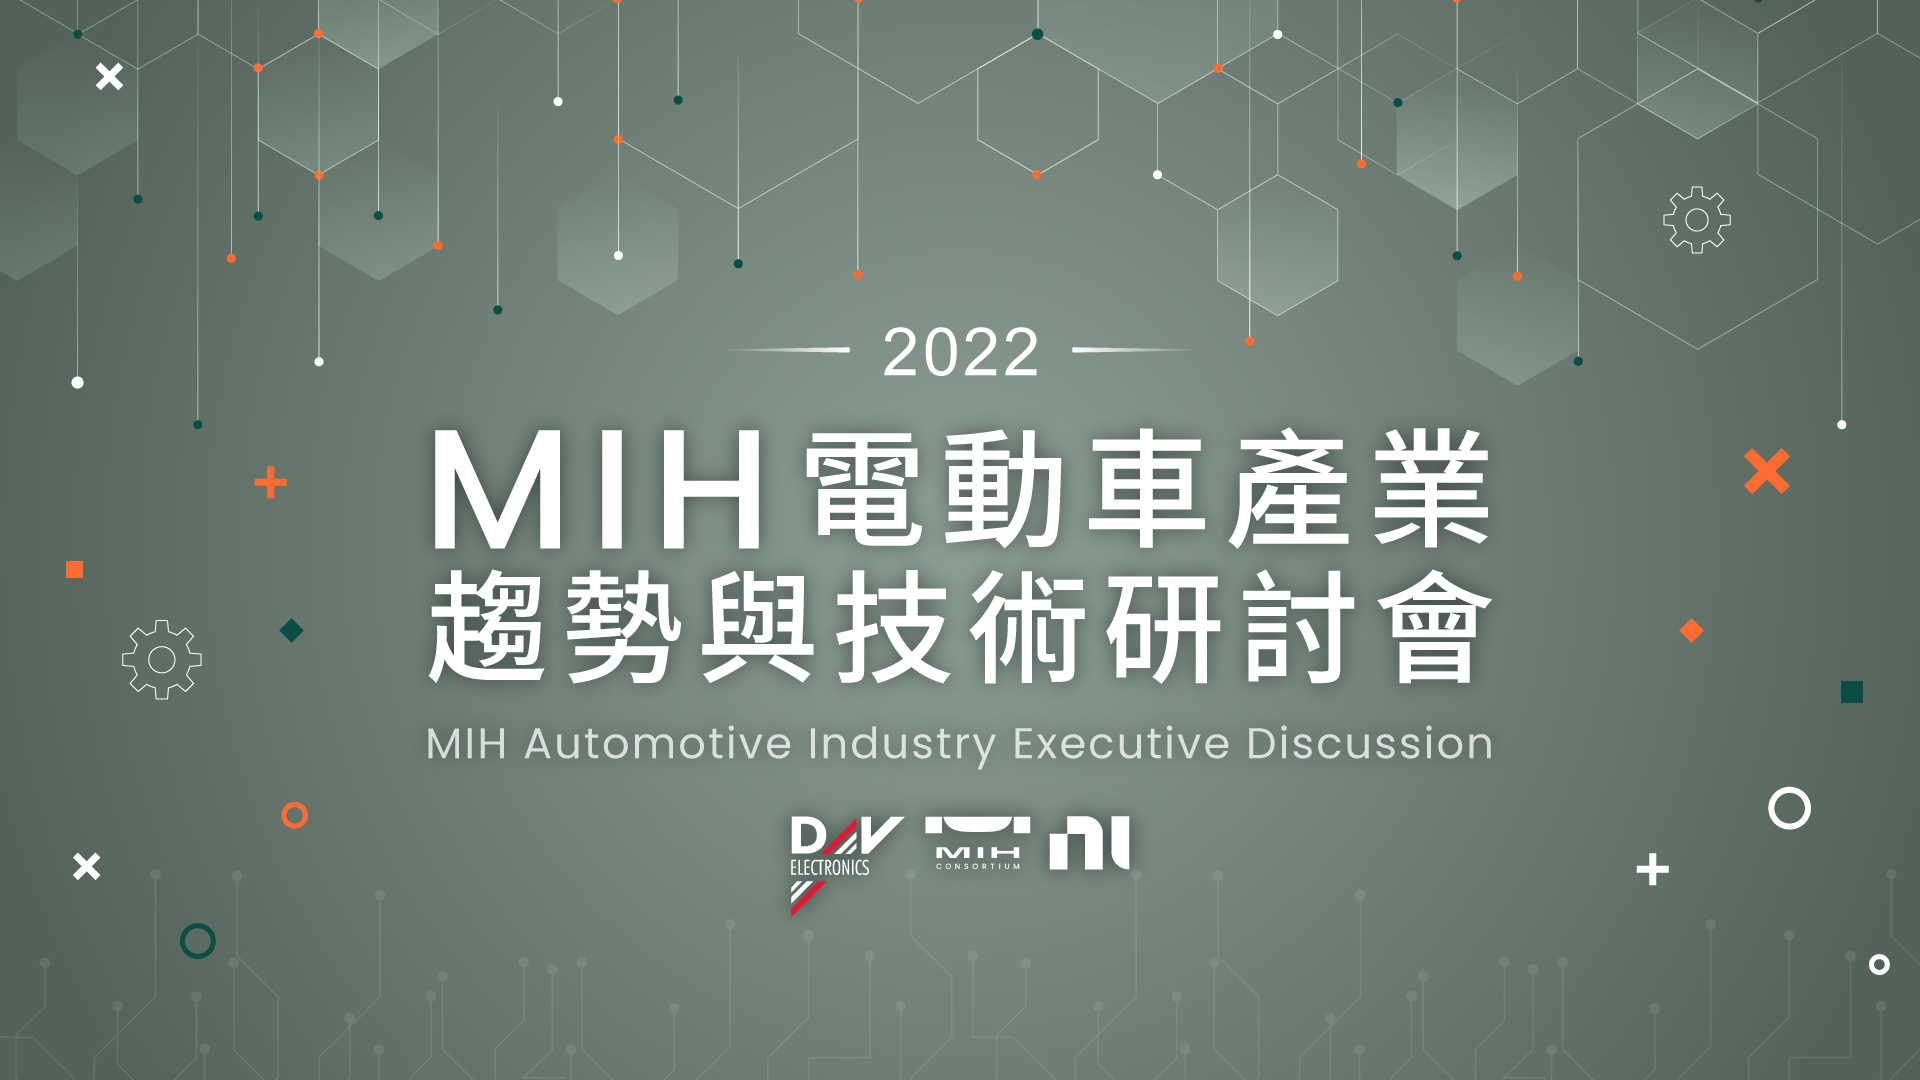 2022 MIH Industry Seminar | Videos and Materials Sharing